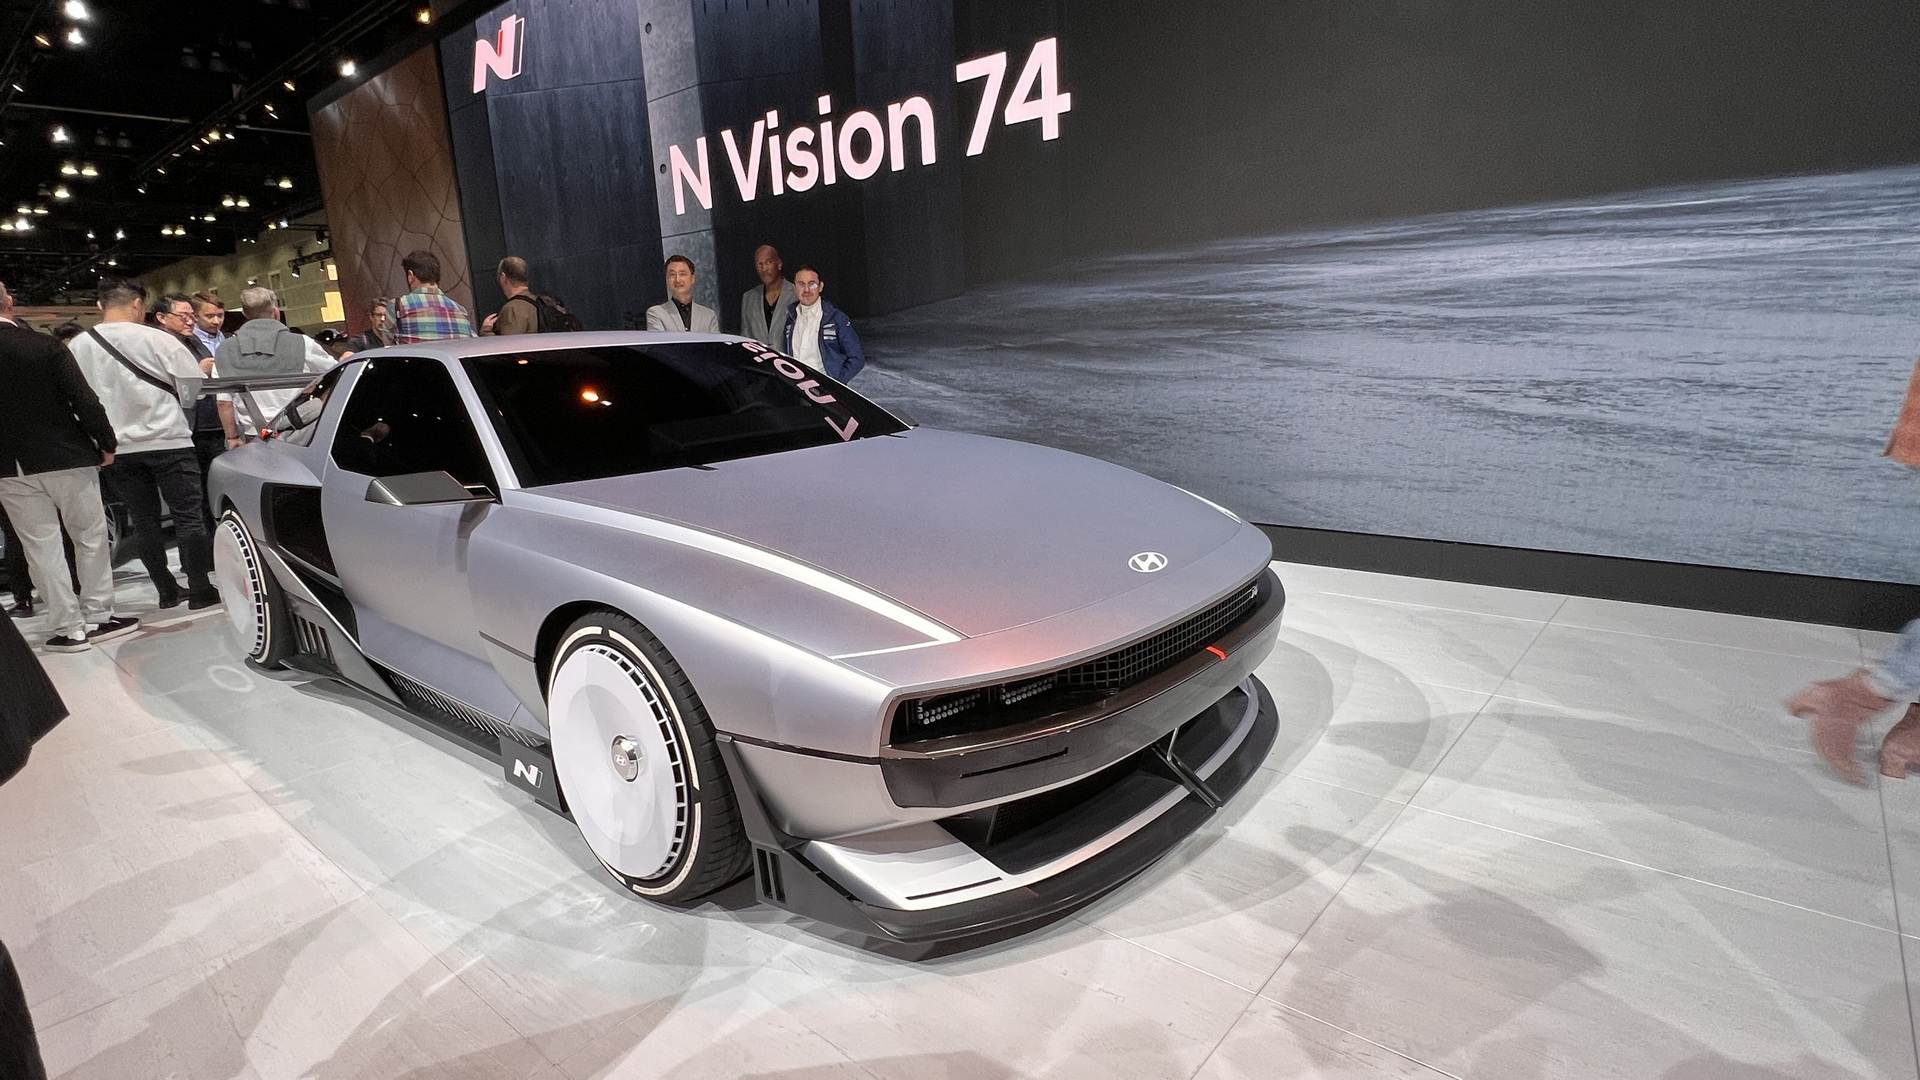 هيونداي N فيجن 74 الاختبارية الجديدة كلياً هي مستقبل سيارات N الرياضية 28